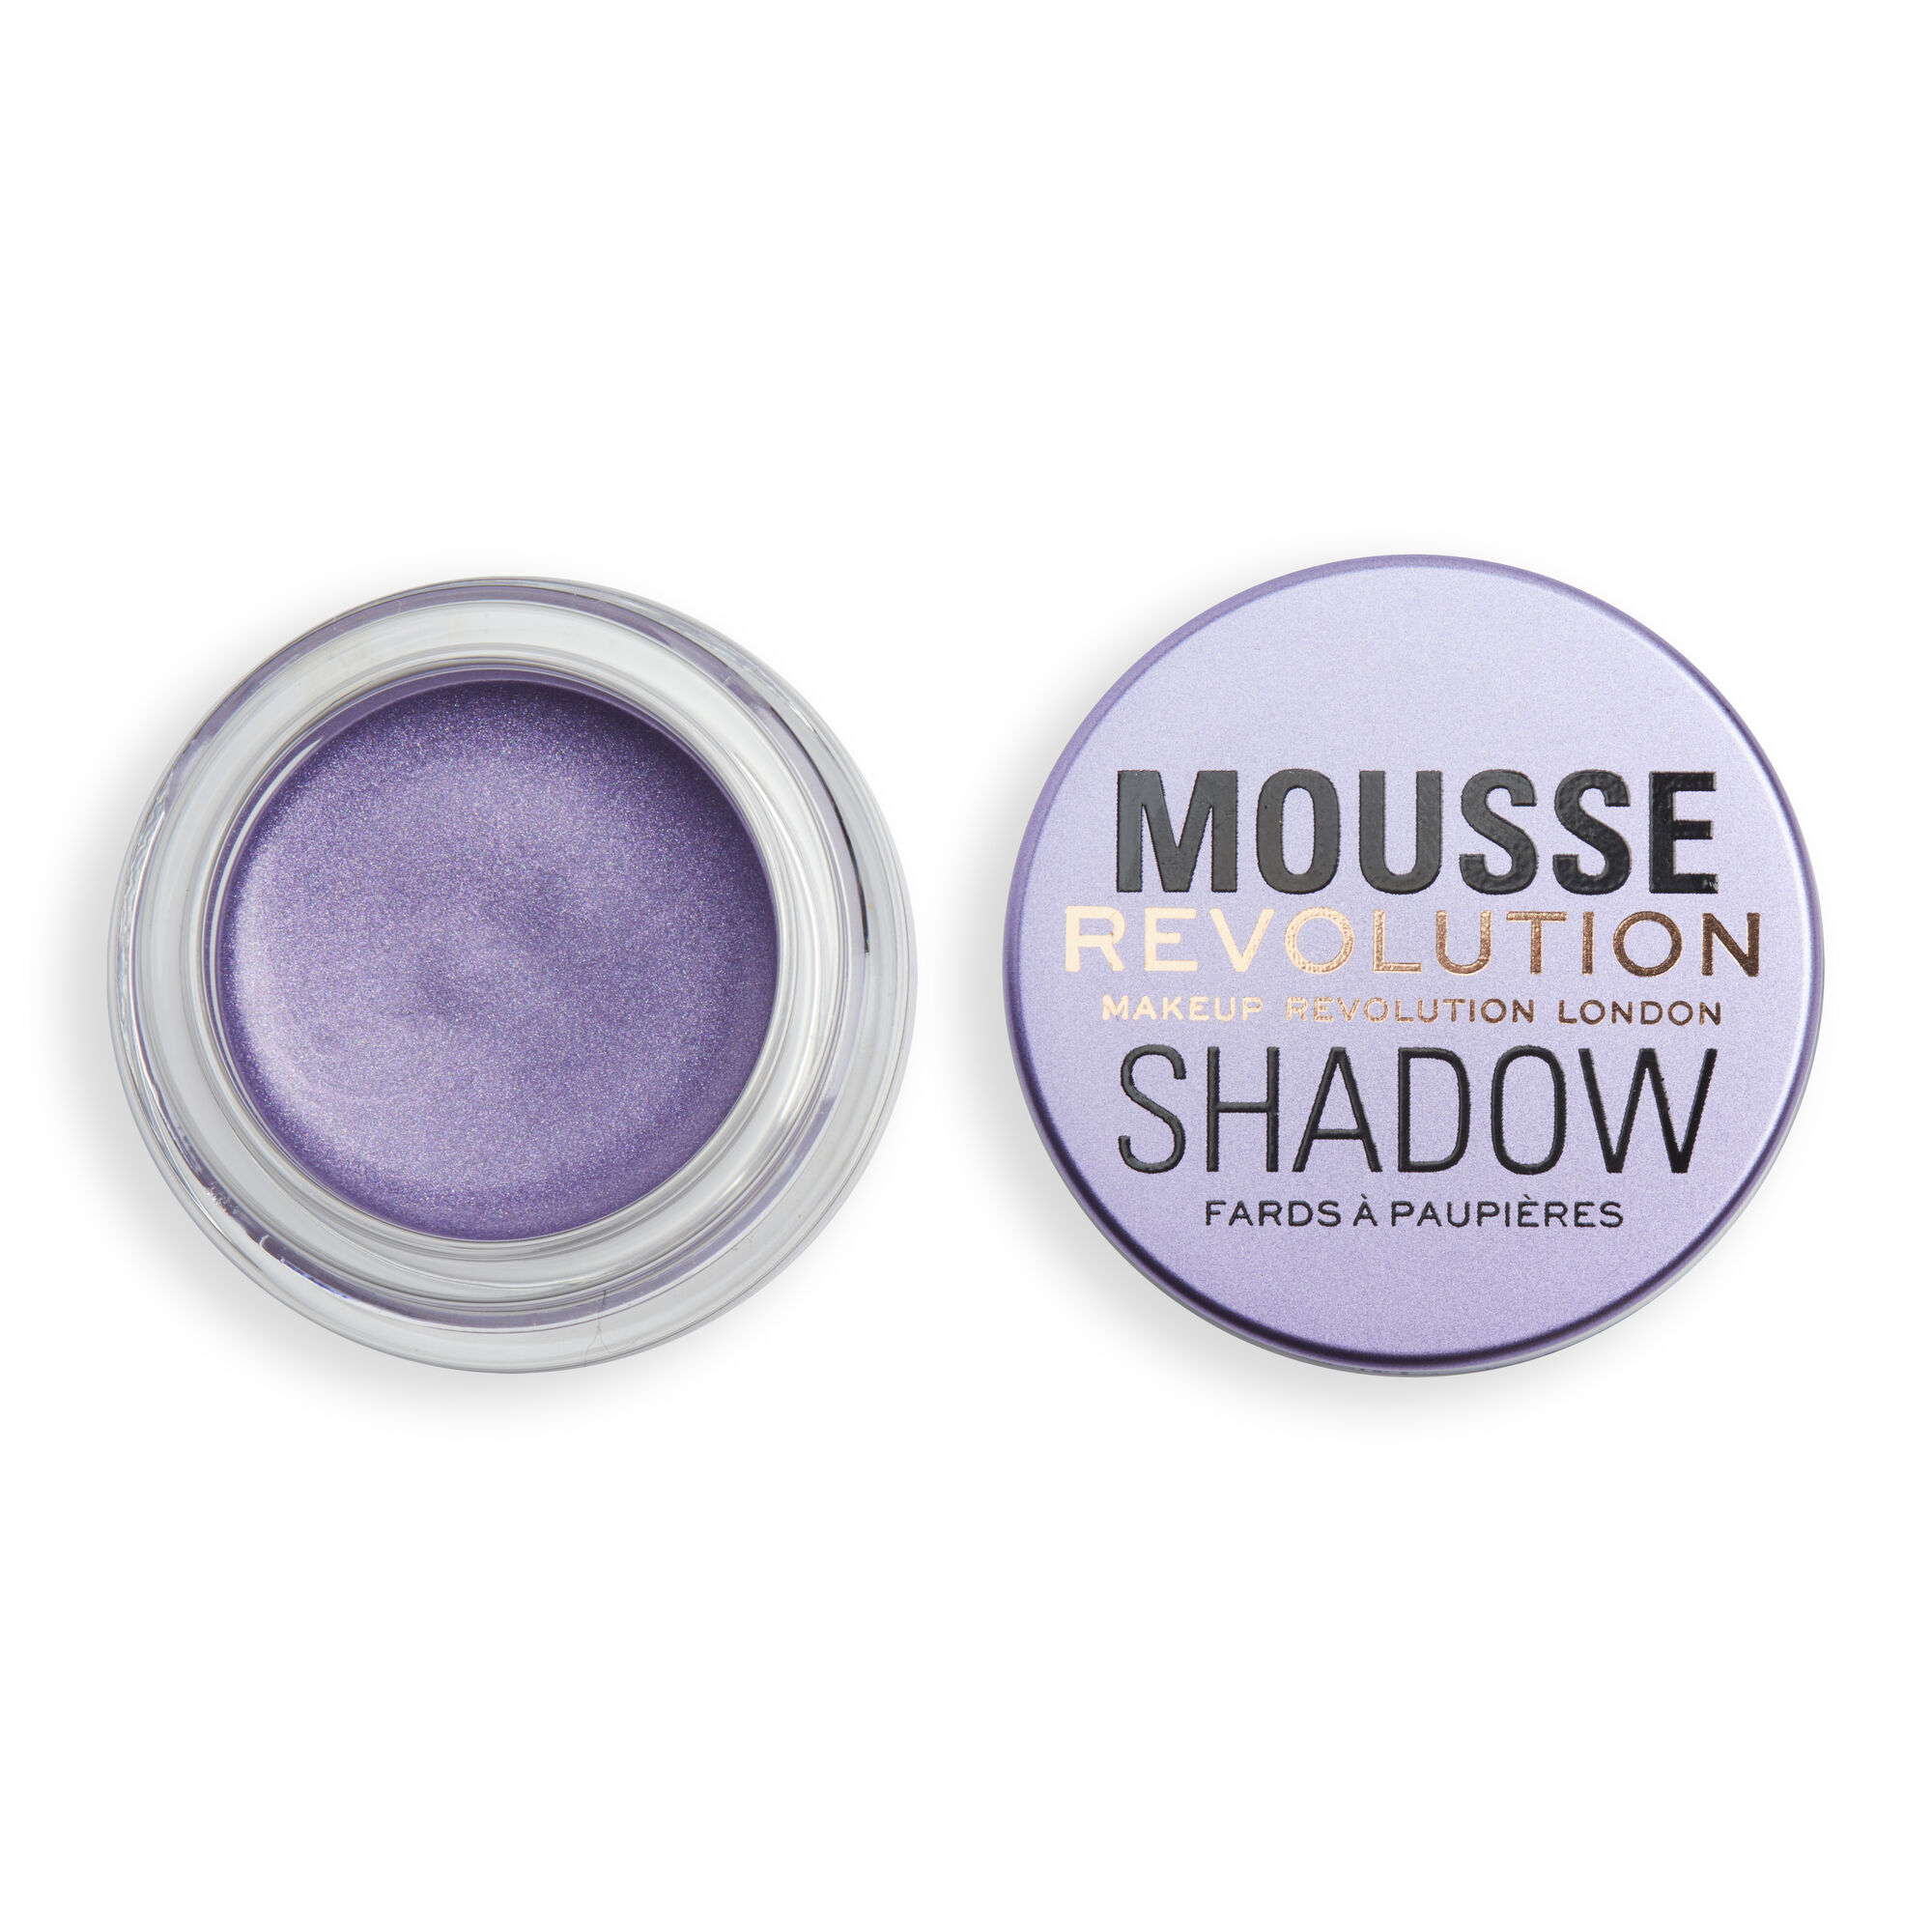 Тени Revolution Makeup кремовые для век Mousse Cream Eyeshadow, Lilac тени для глаз stellary cream eyeshadow кремовые тон 03 3 г